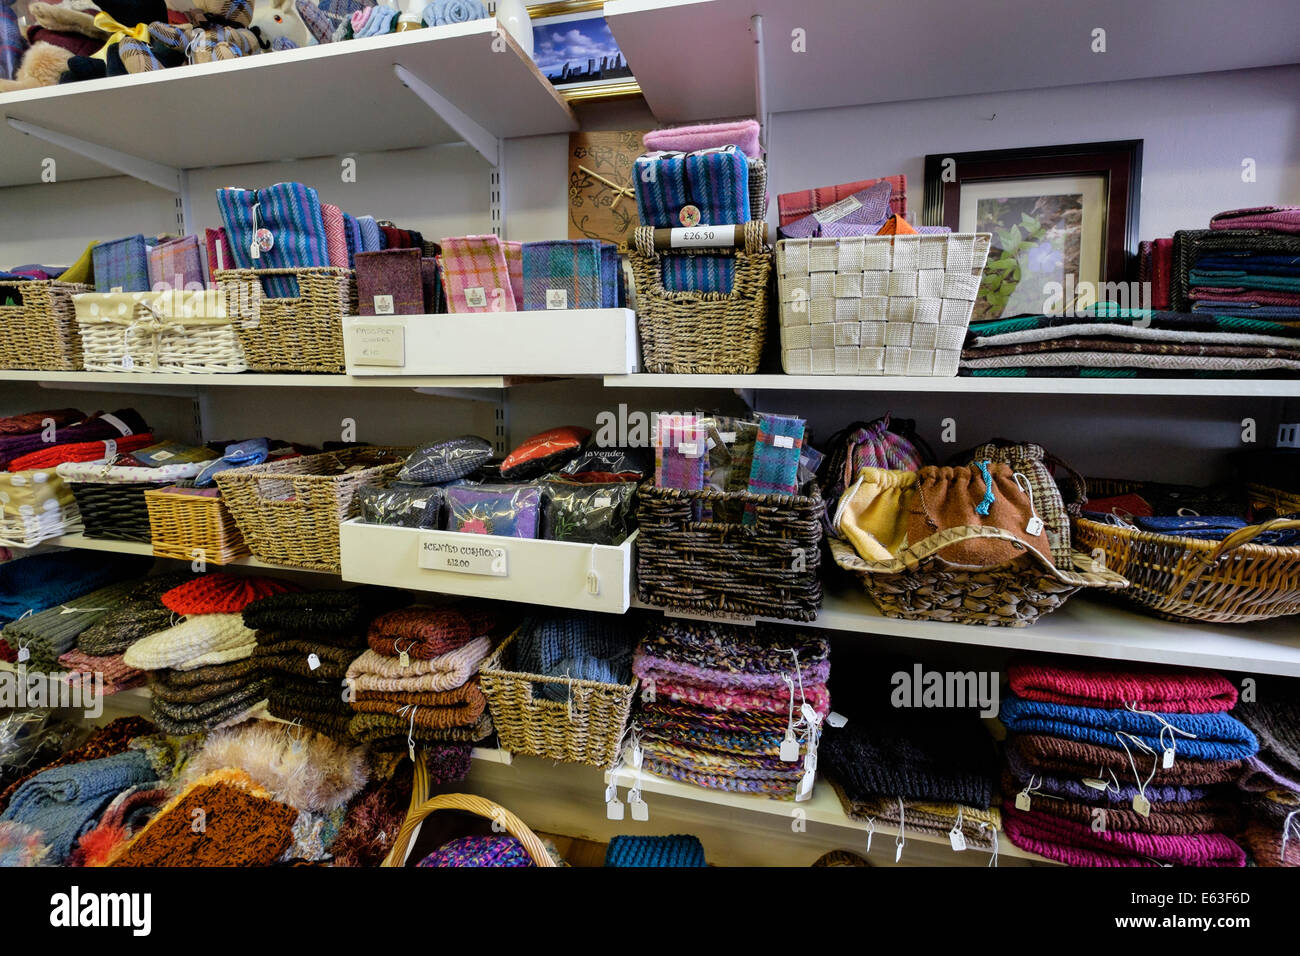 Tweed delle Ebridi merci e negozio di souvenir in vendita su scaffali in un negozio di articoli da regalo vendita di lana locale artigianato. Isola di Lewis Ebridi Esterne della Scozia UK Foto Stock